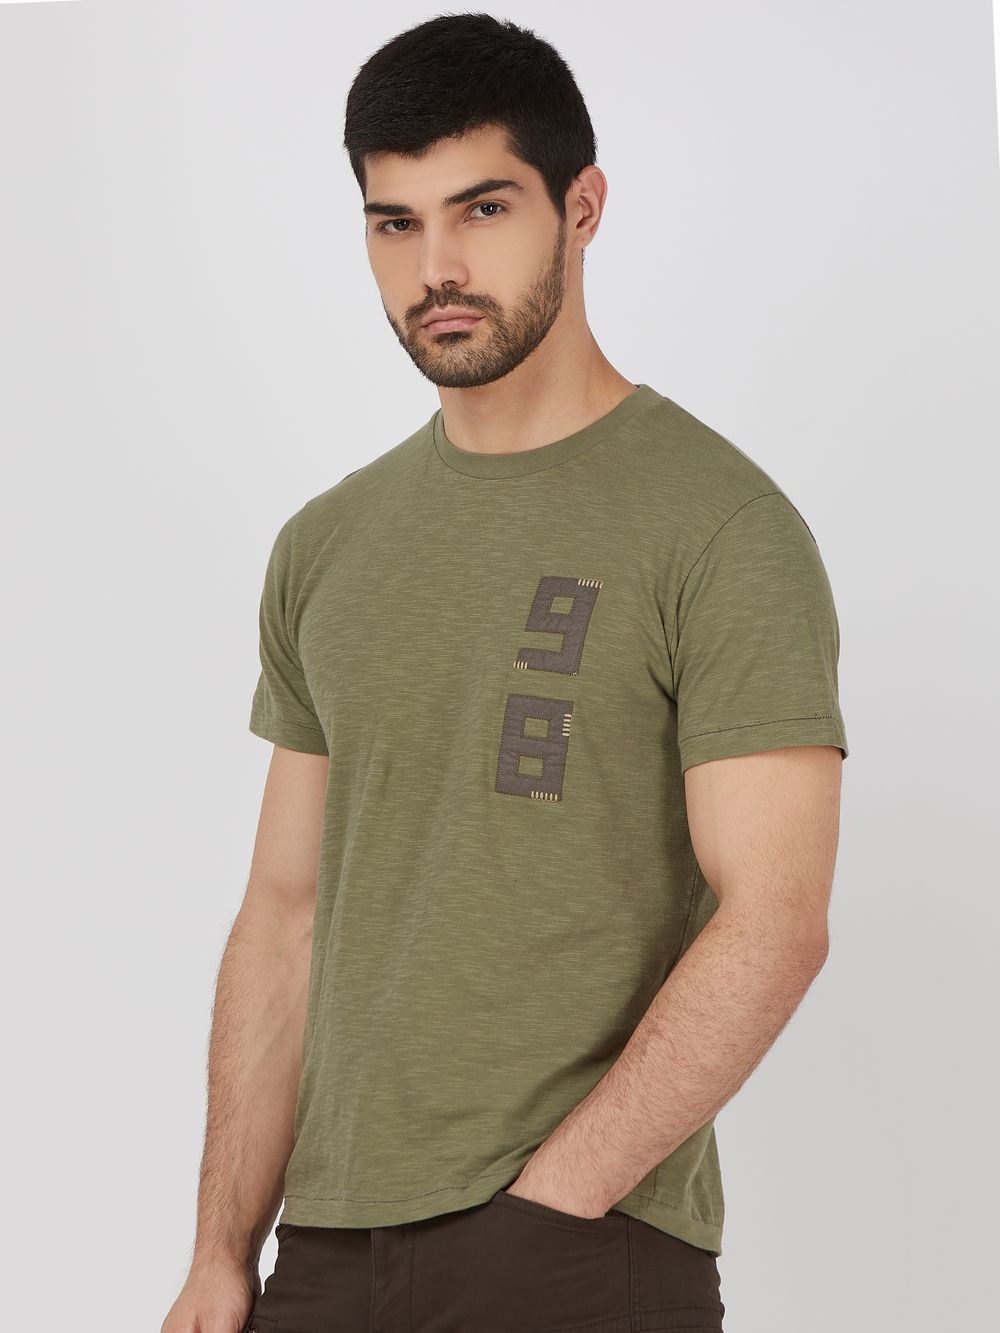 Olive Applique Plain Slim Fit Slub Jersey T-Shirt